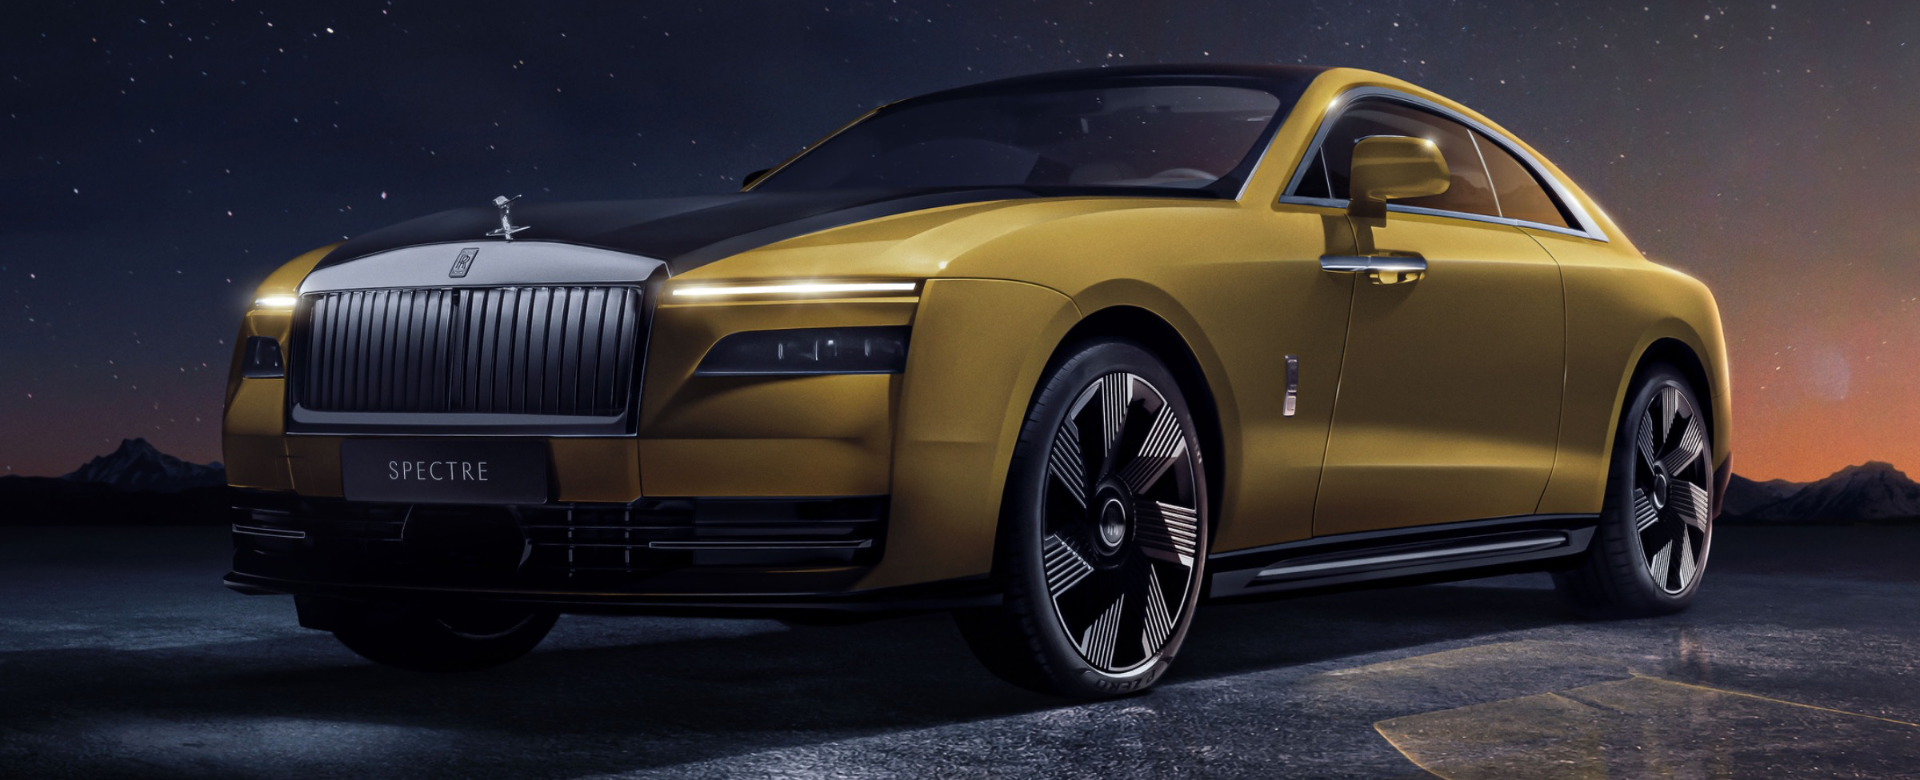 Rolls-Royce chính thức ra mắt chiếc xe chạy bằng điện